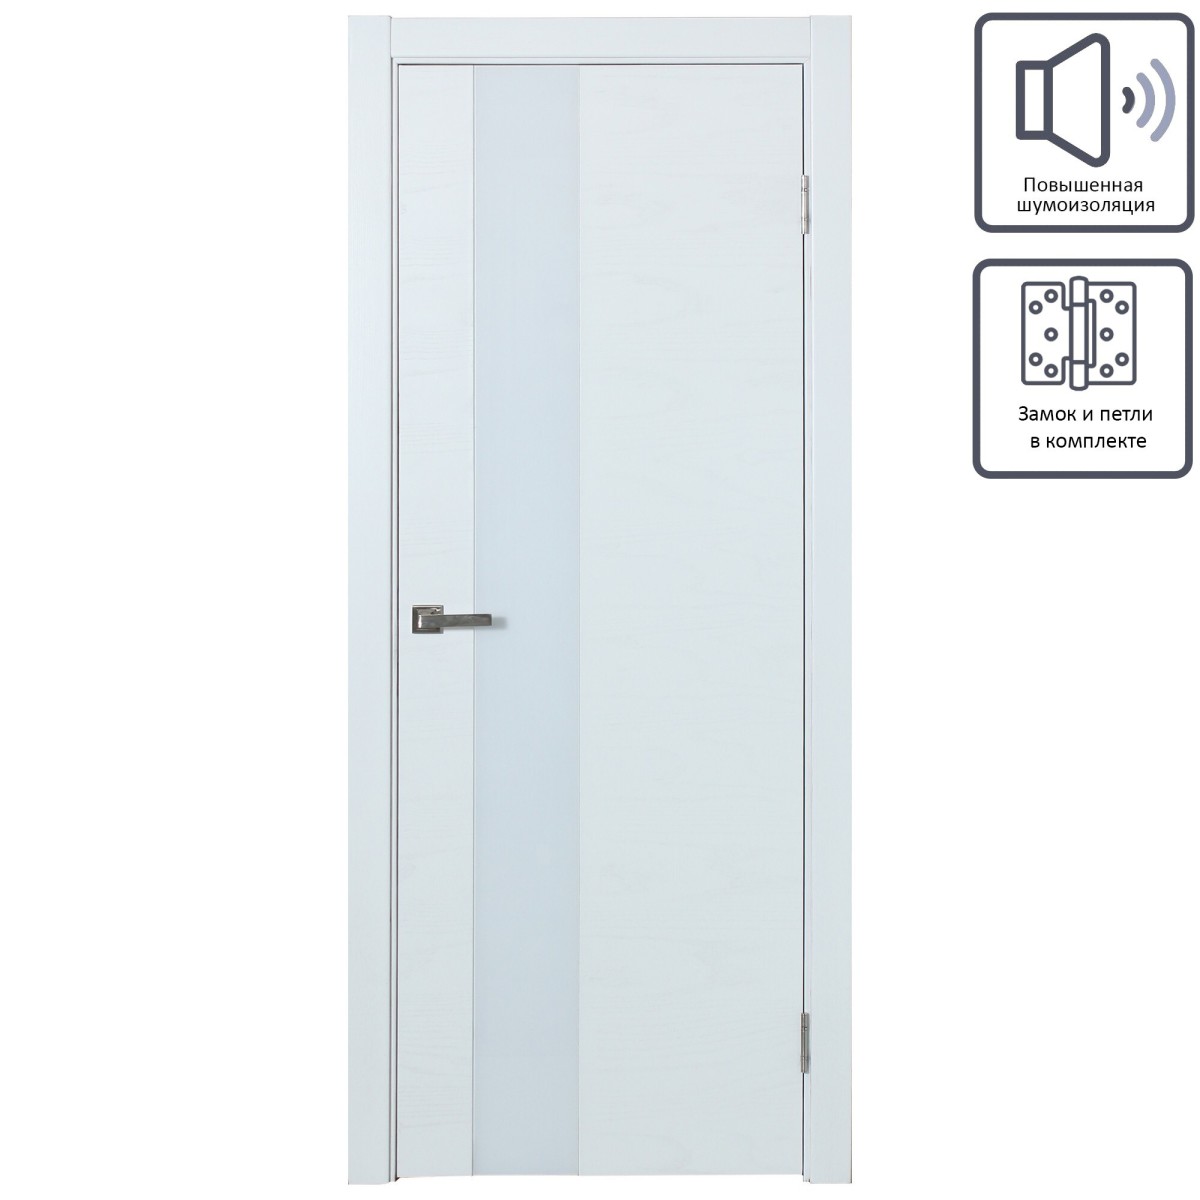 Дверь межкомнатная остеклённая шпон Модерн 90x200 см цвет белый ясень